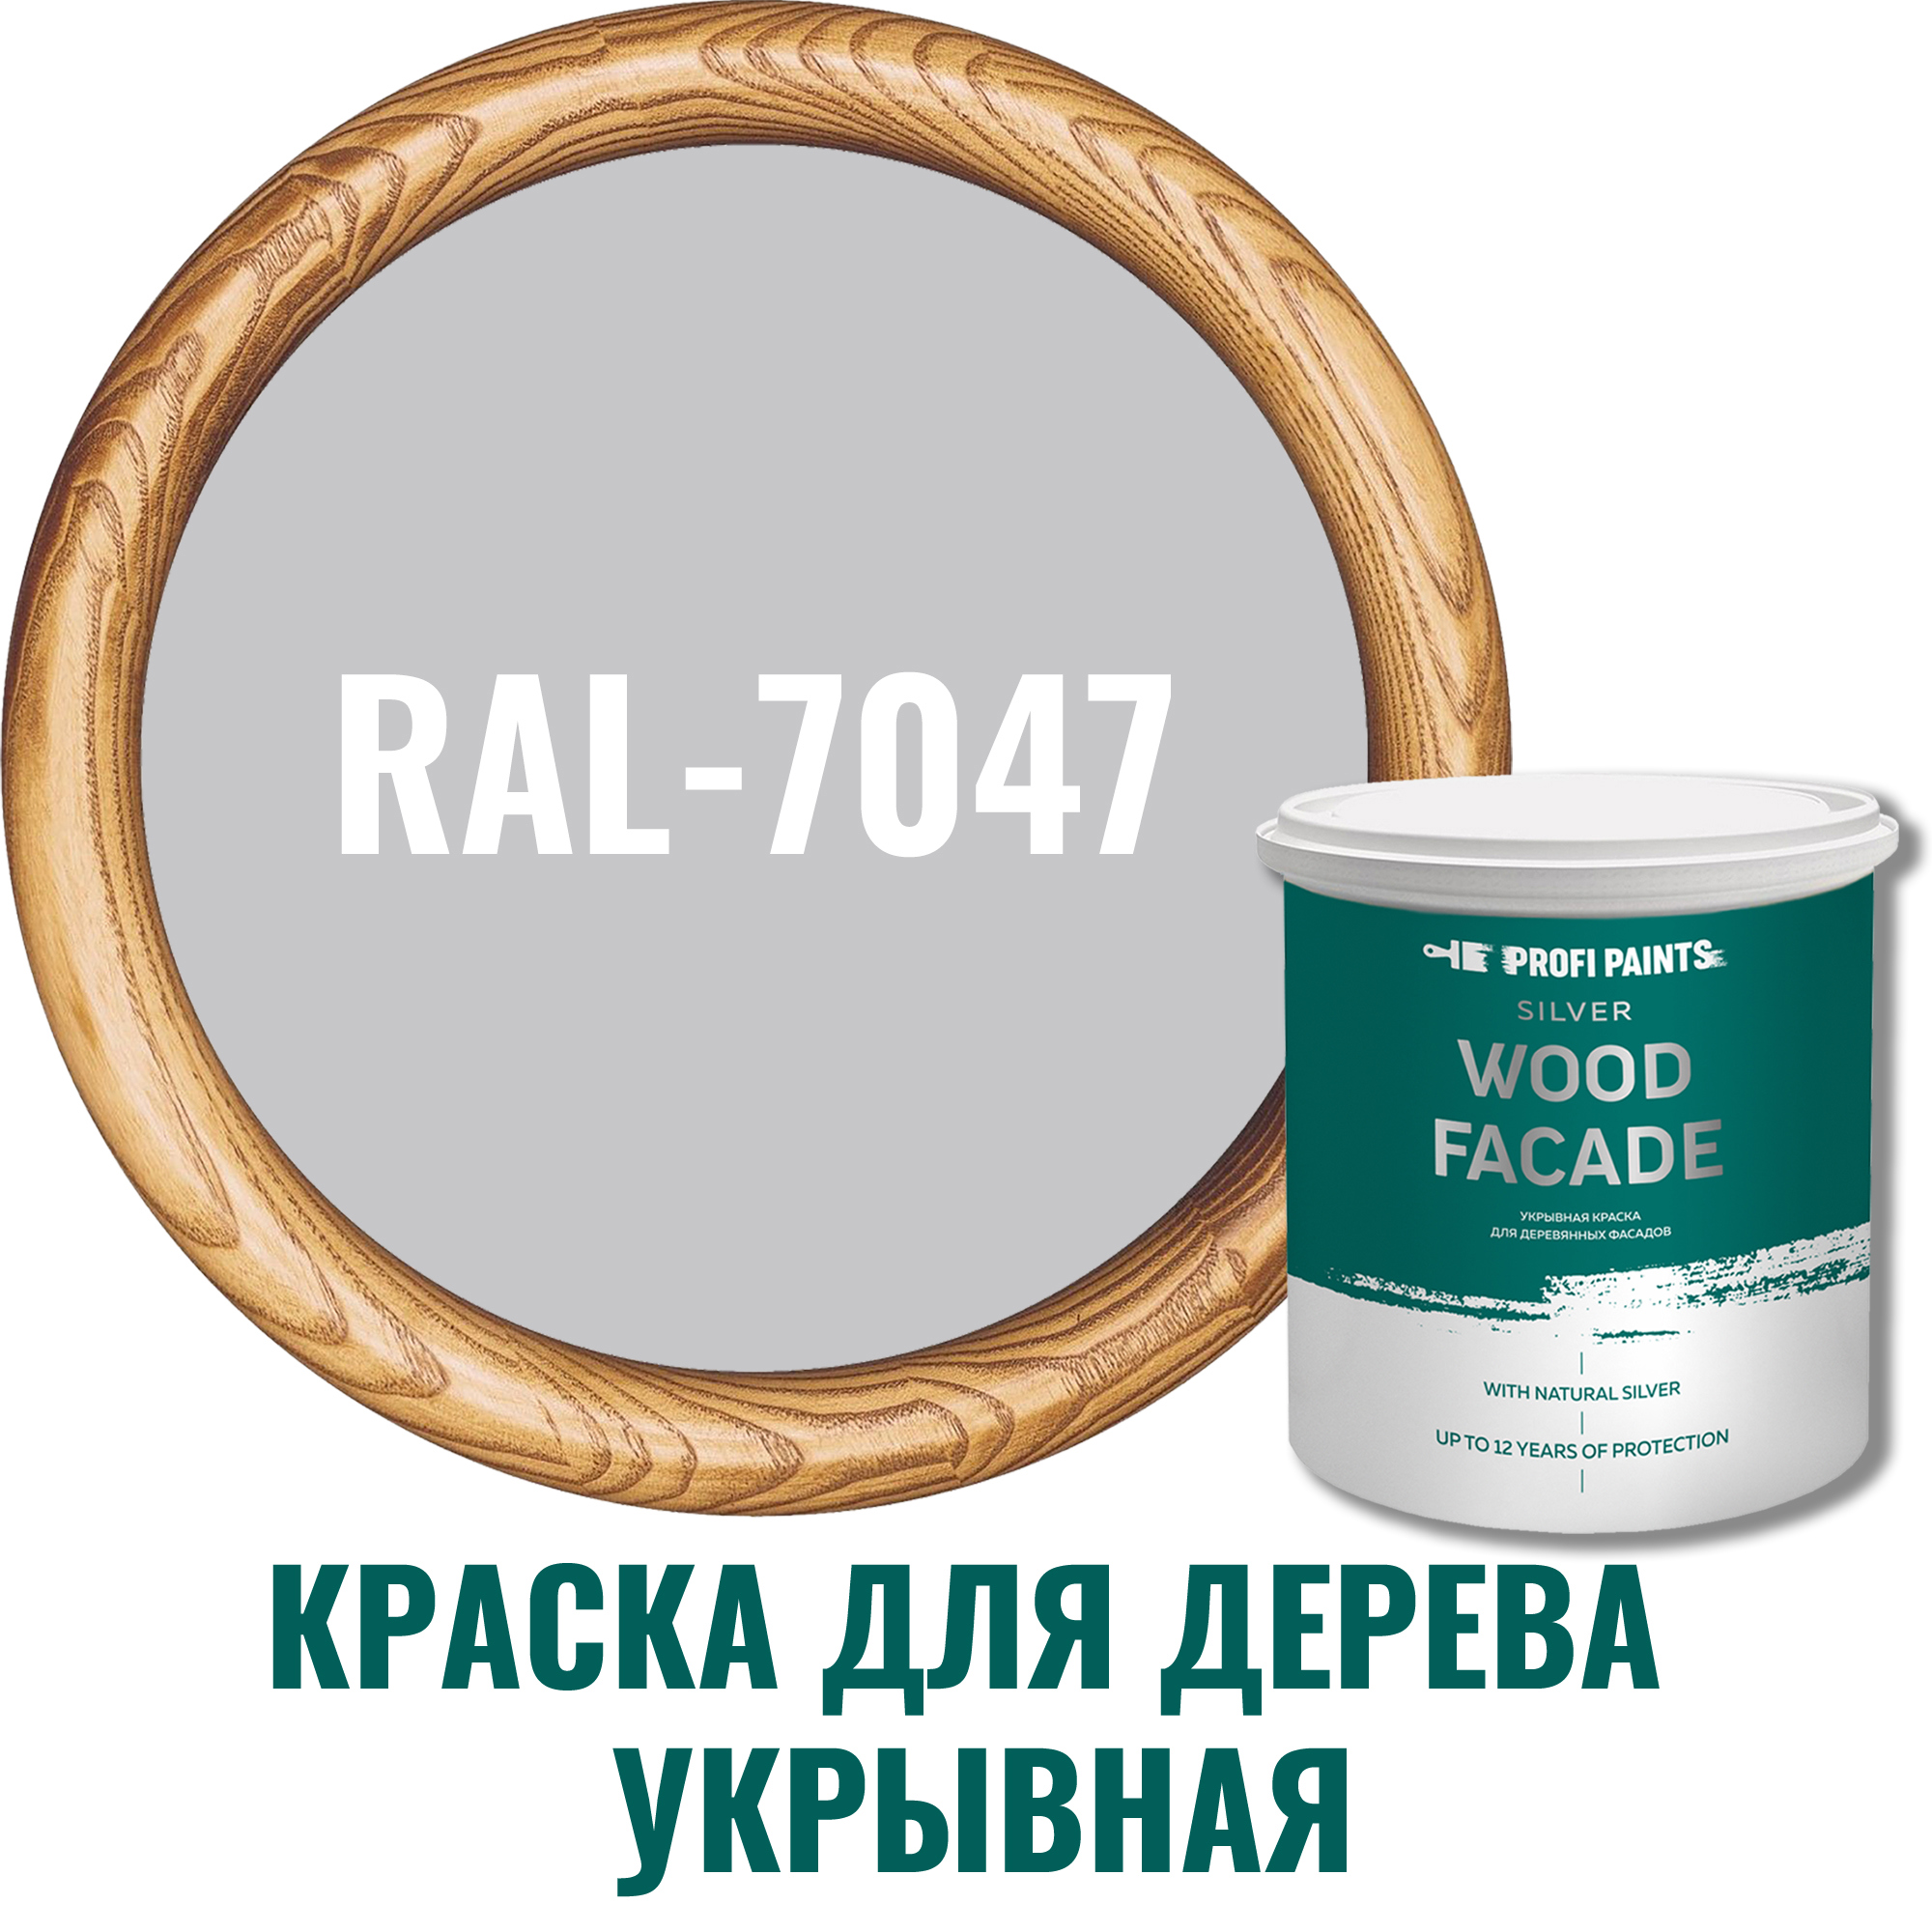 91106645 Краска для дерева 11286_D SILVER WOOD FASADE цвет RAL-7047 светло-серый 2.7 л STLM-0487637 PROFIPAINTS